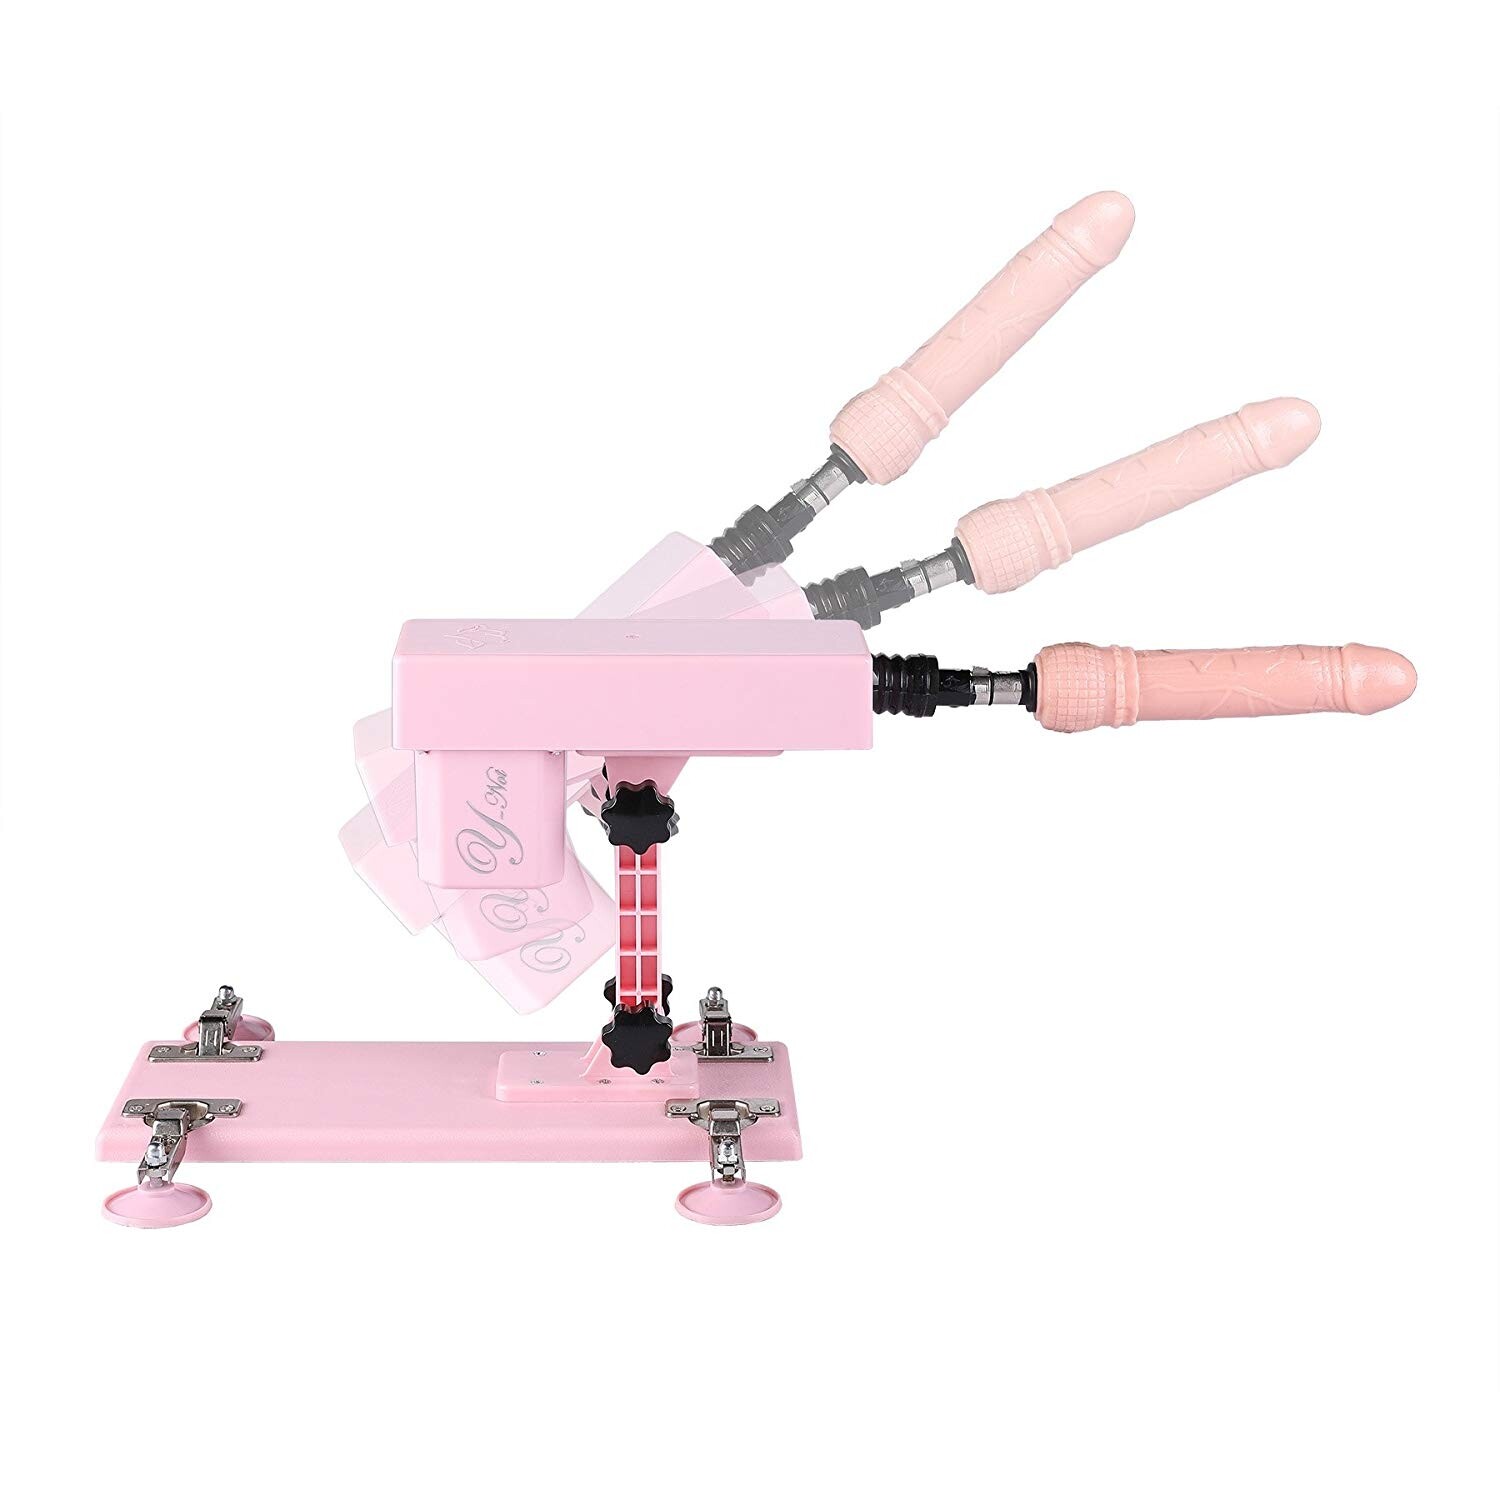 Mitragliatrice del sesso femminile con accessori Dildo 5PCS rosa